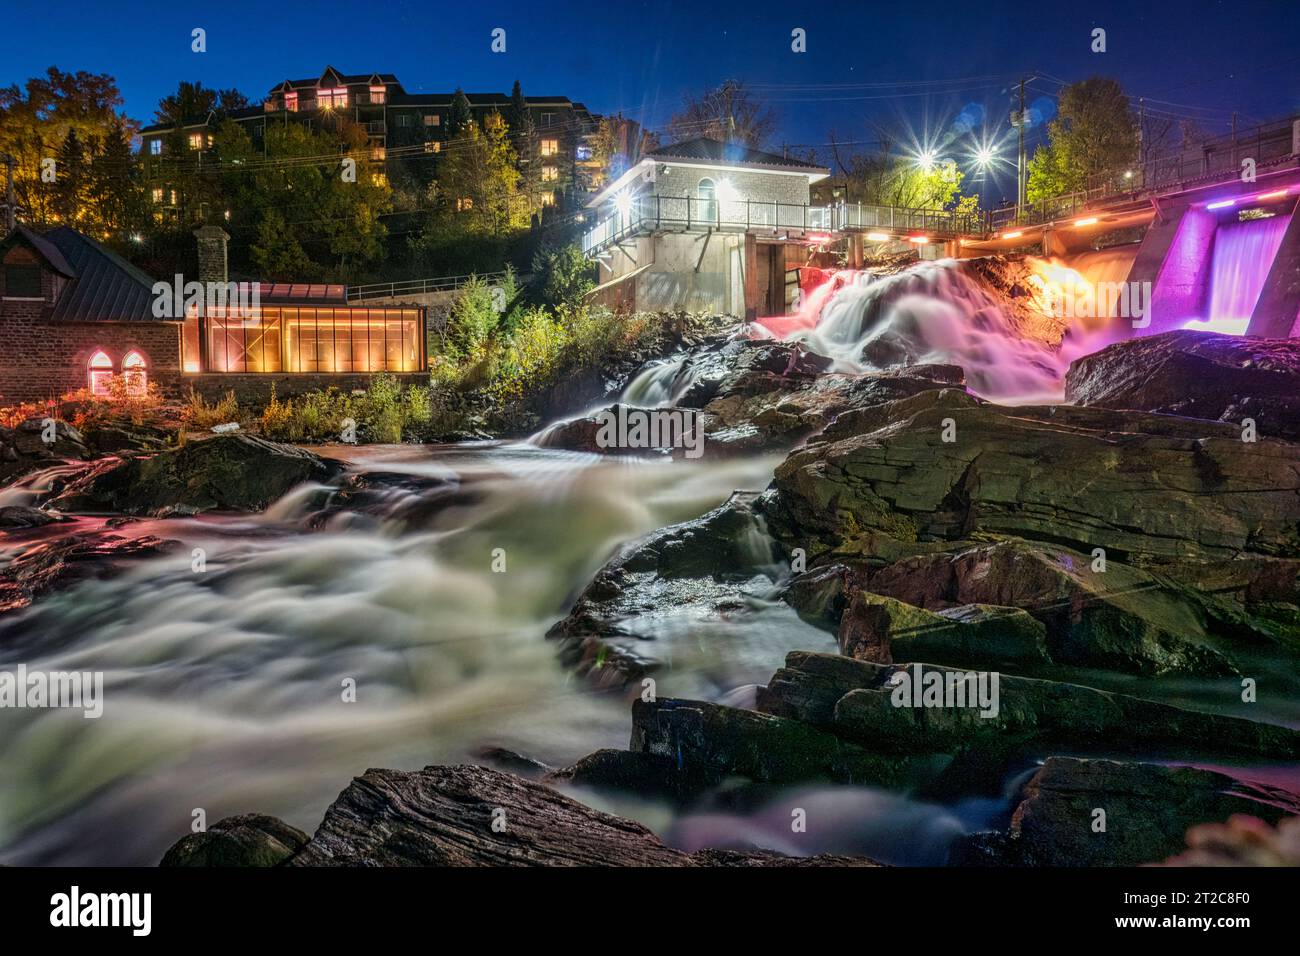 Die Bracebridge Falls und der Staudamm werden abends mit bunten Lichtern beleuchtet Stockfoto